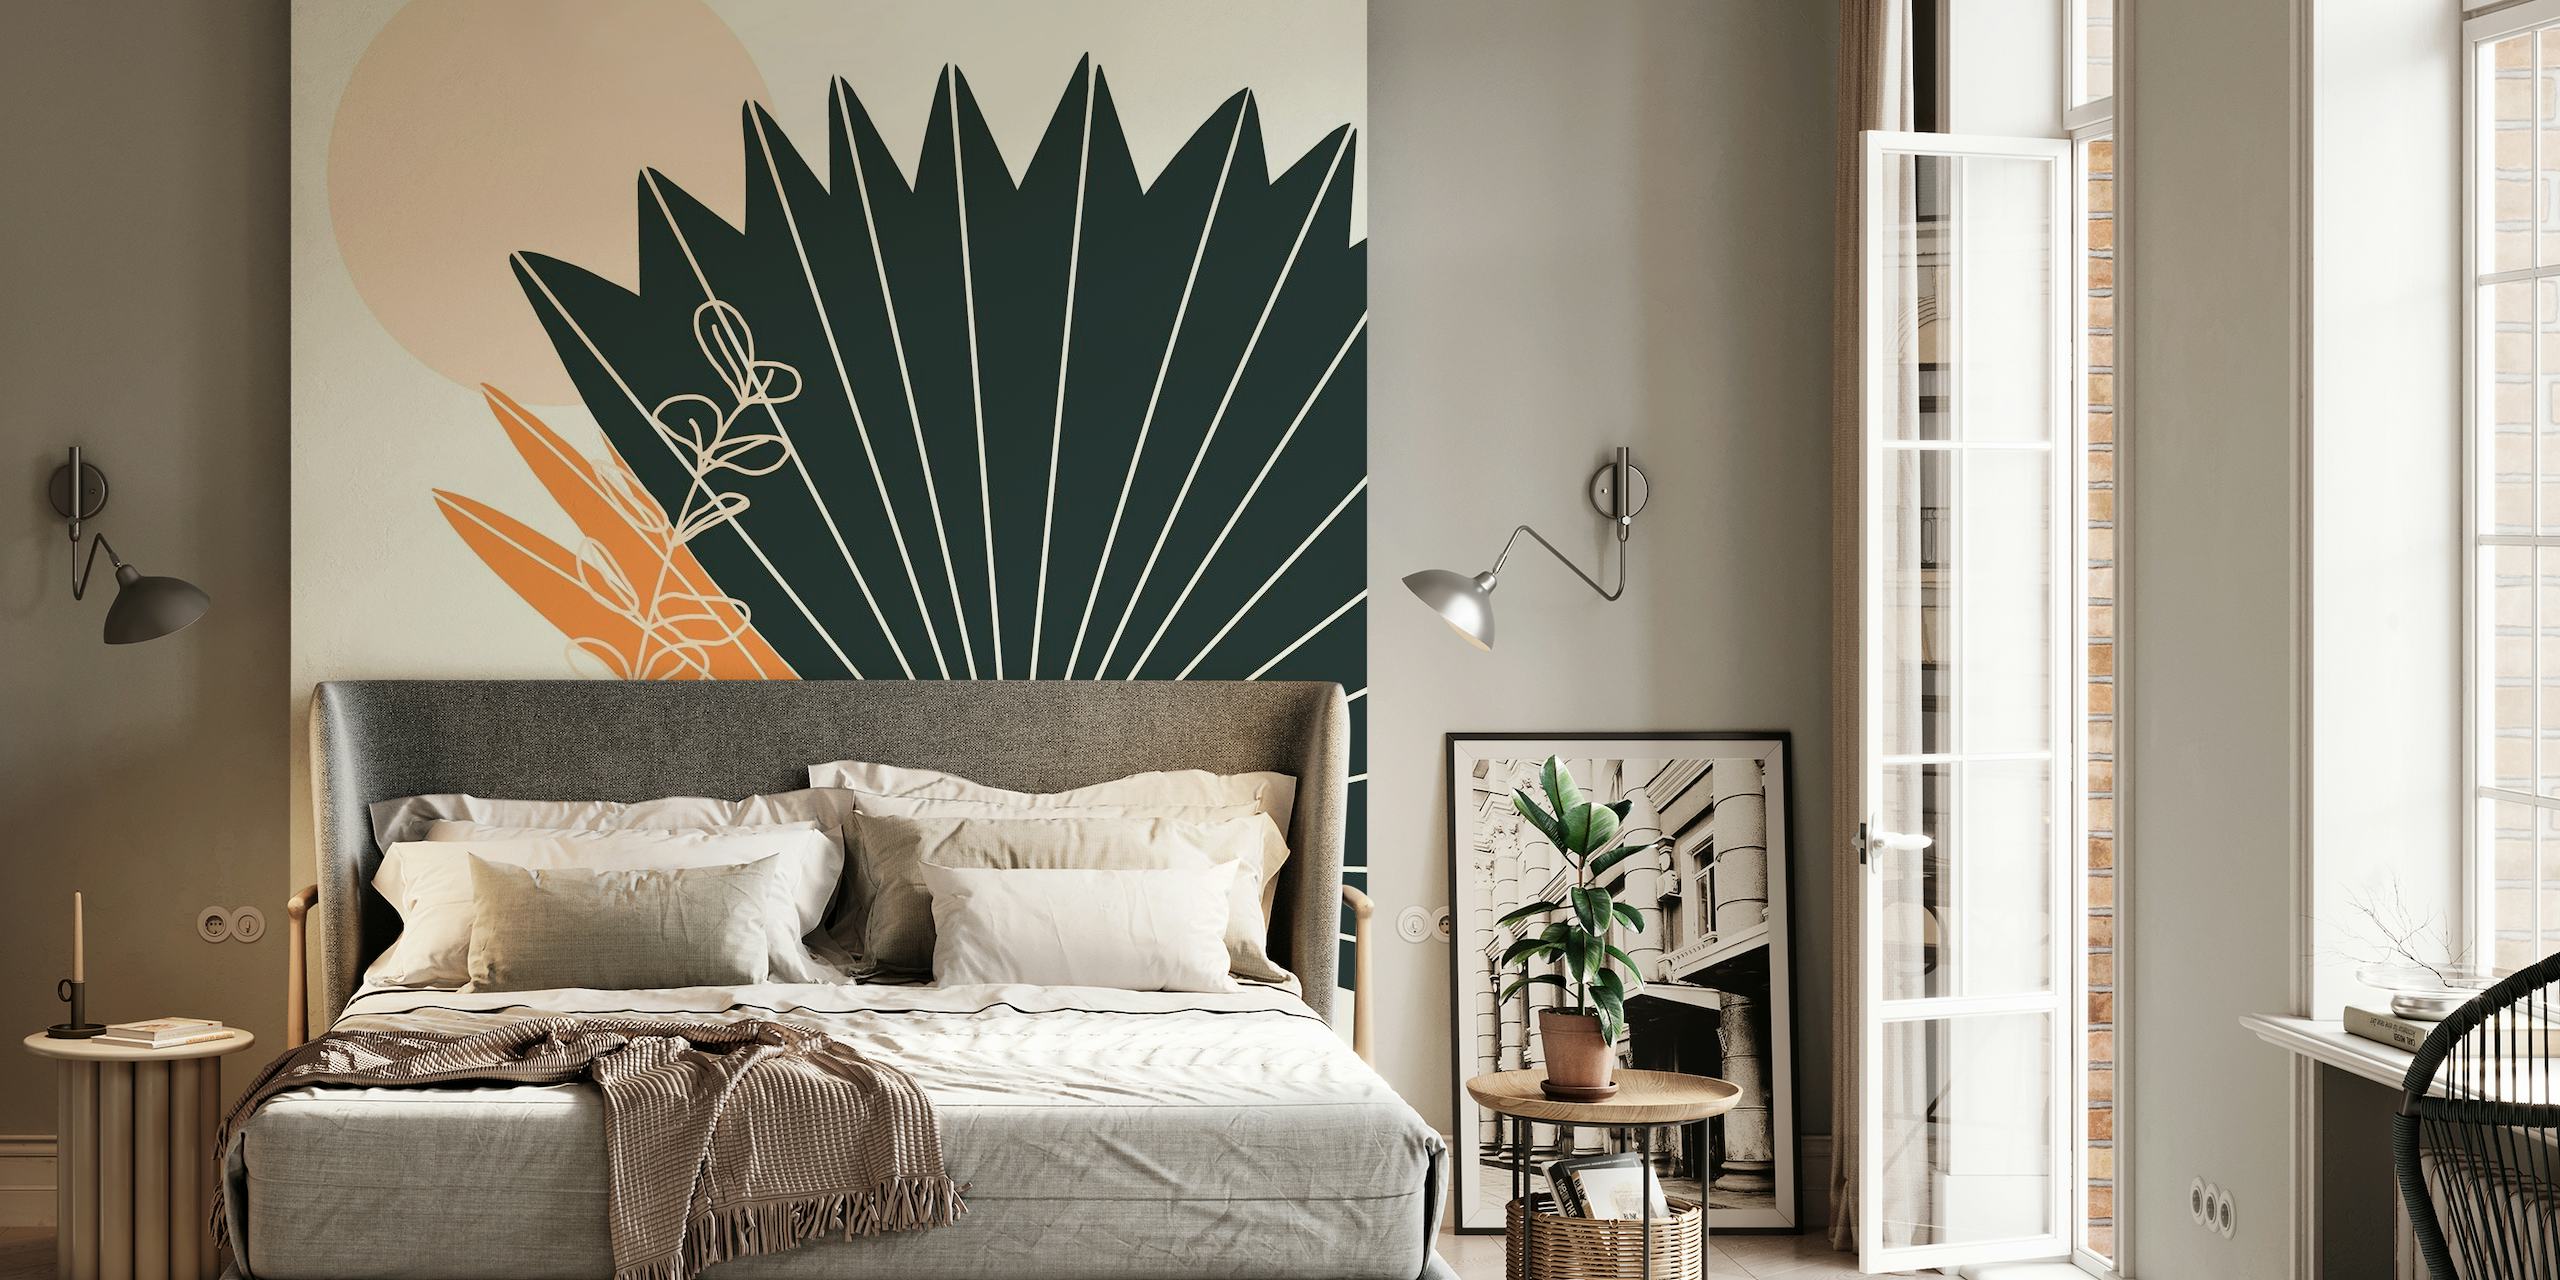 Abstrakt vægmaleri med stiliserede palmeblade og håndværksvase i jordfarver